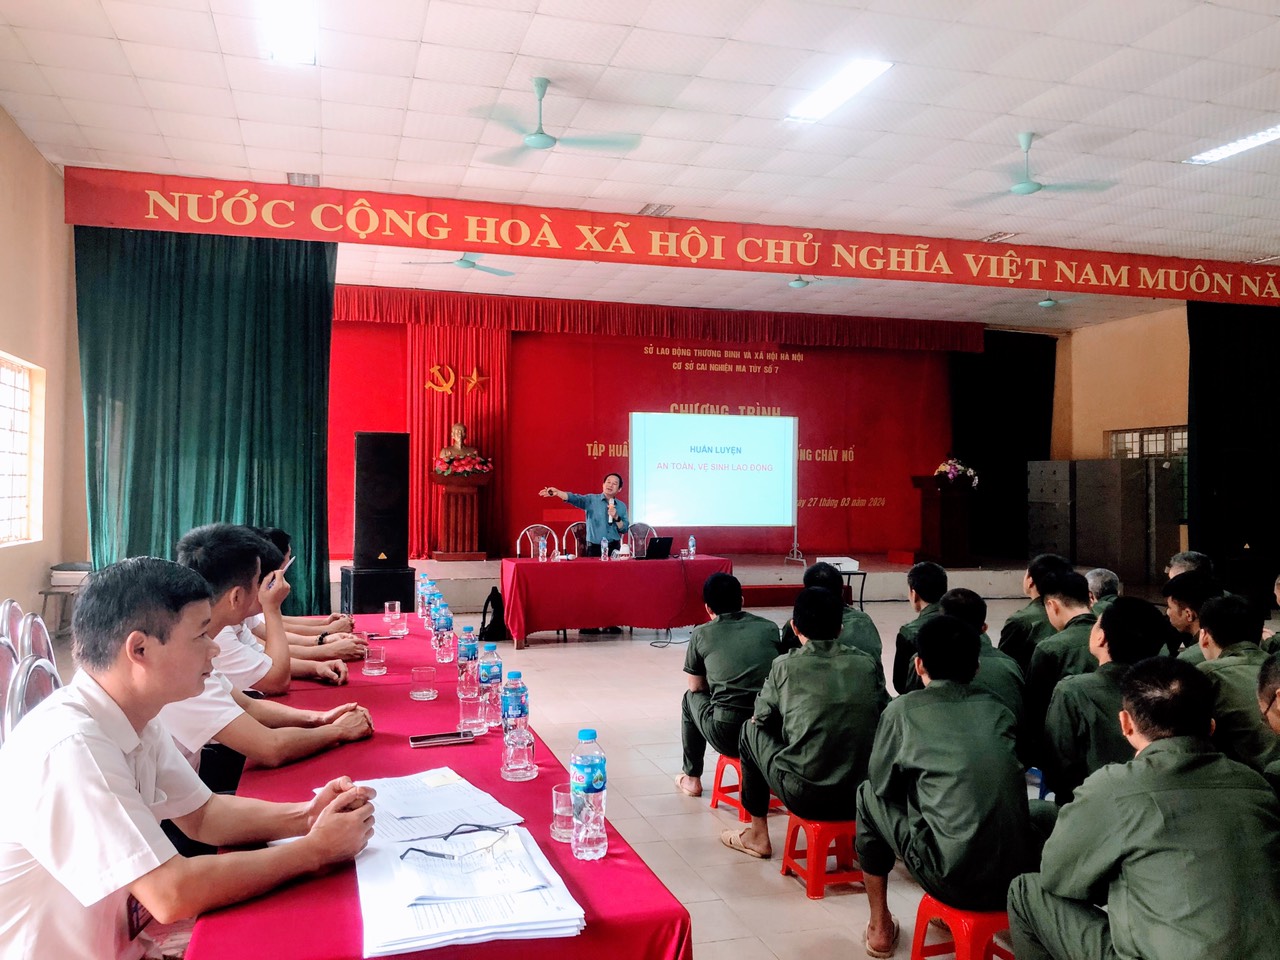 Cơ sở cai nghiện ma túy số 7 Hà Nội tổ chức chương trình tập huấn an toàn lao động, phòng chống cháy nổ cho cán bộ và học viên